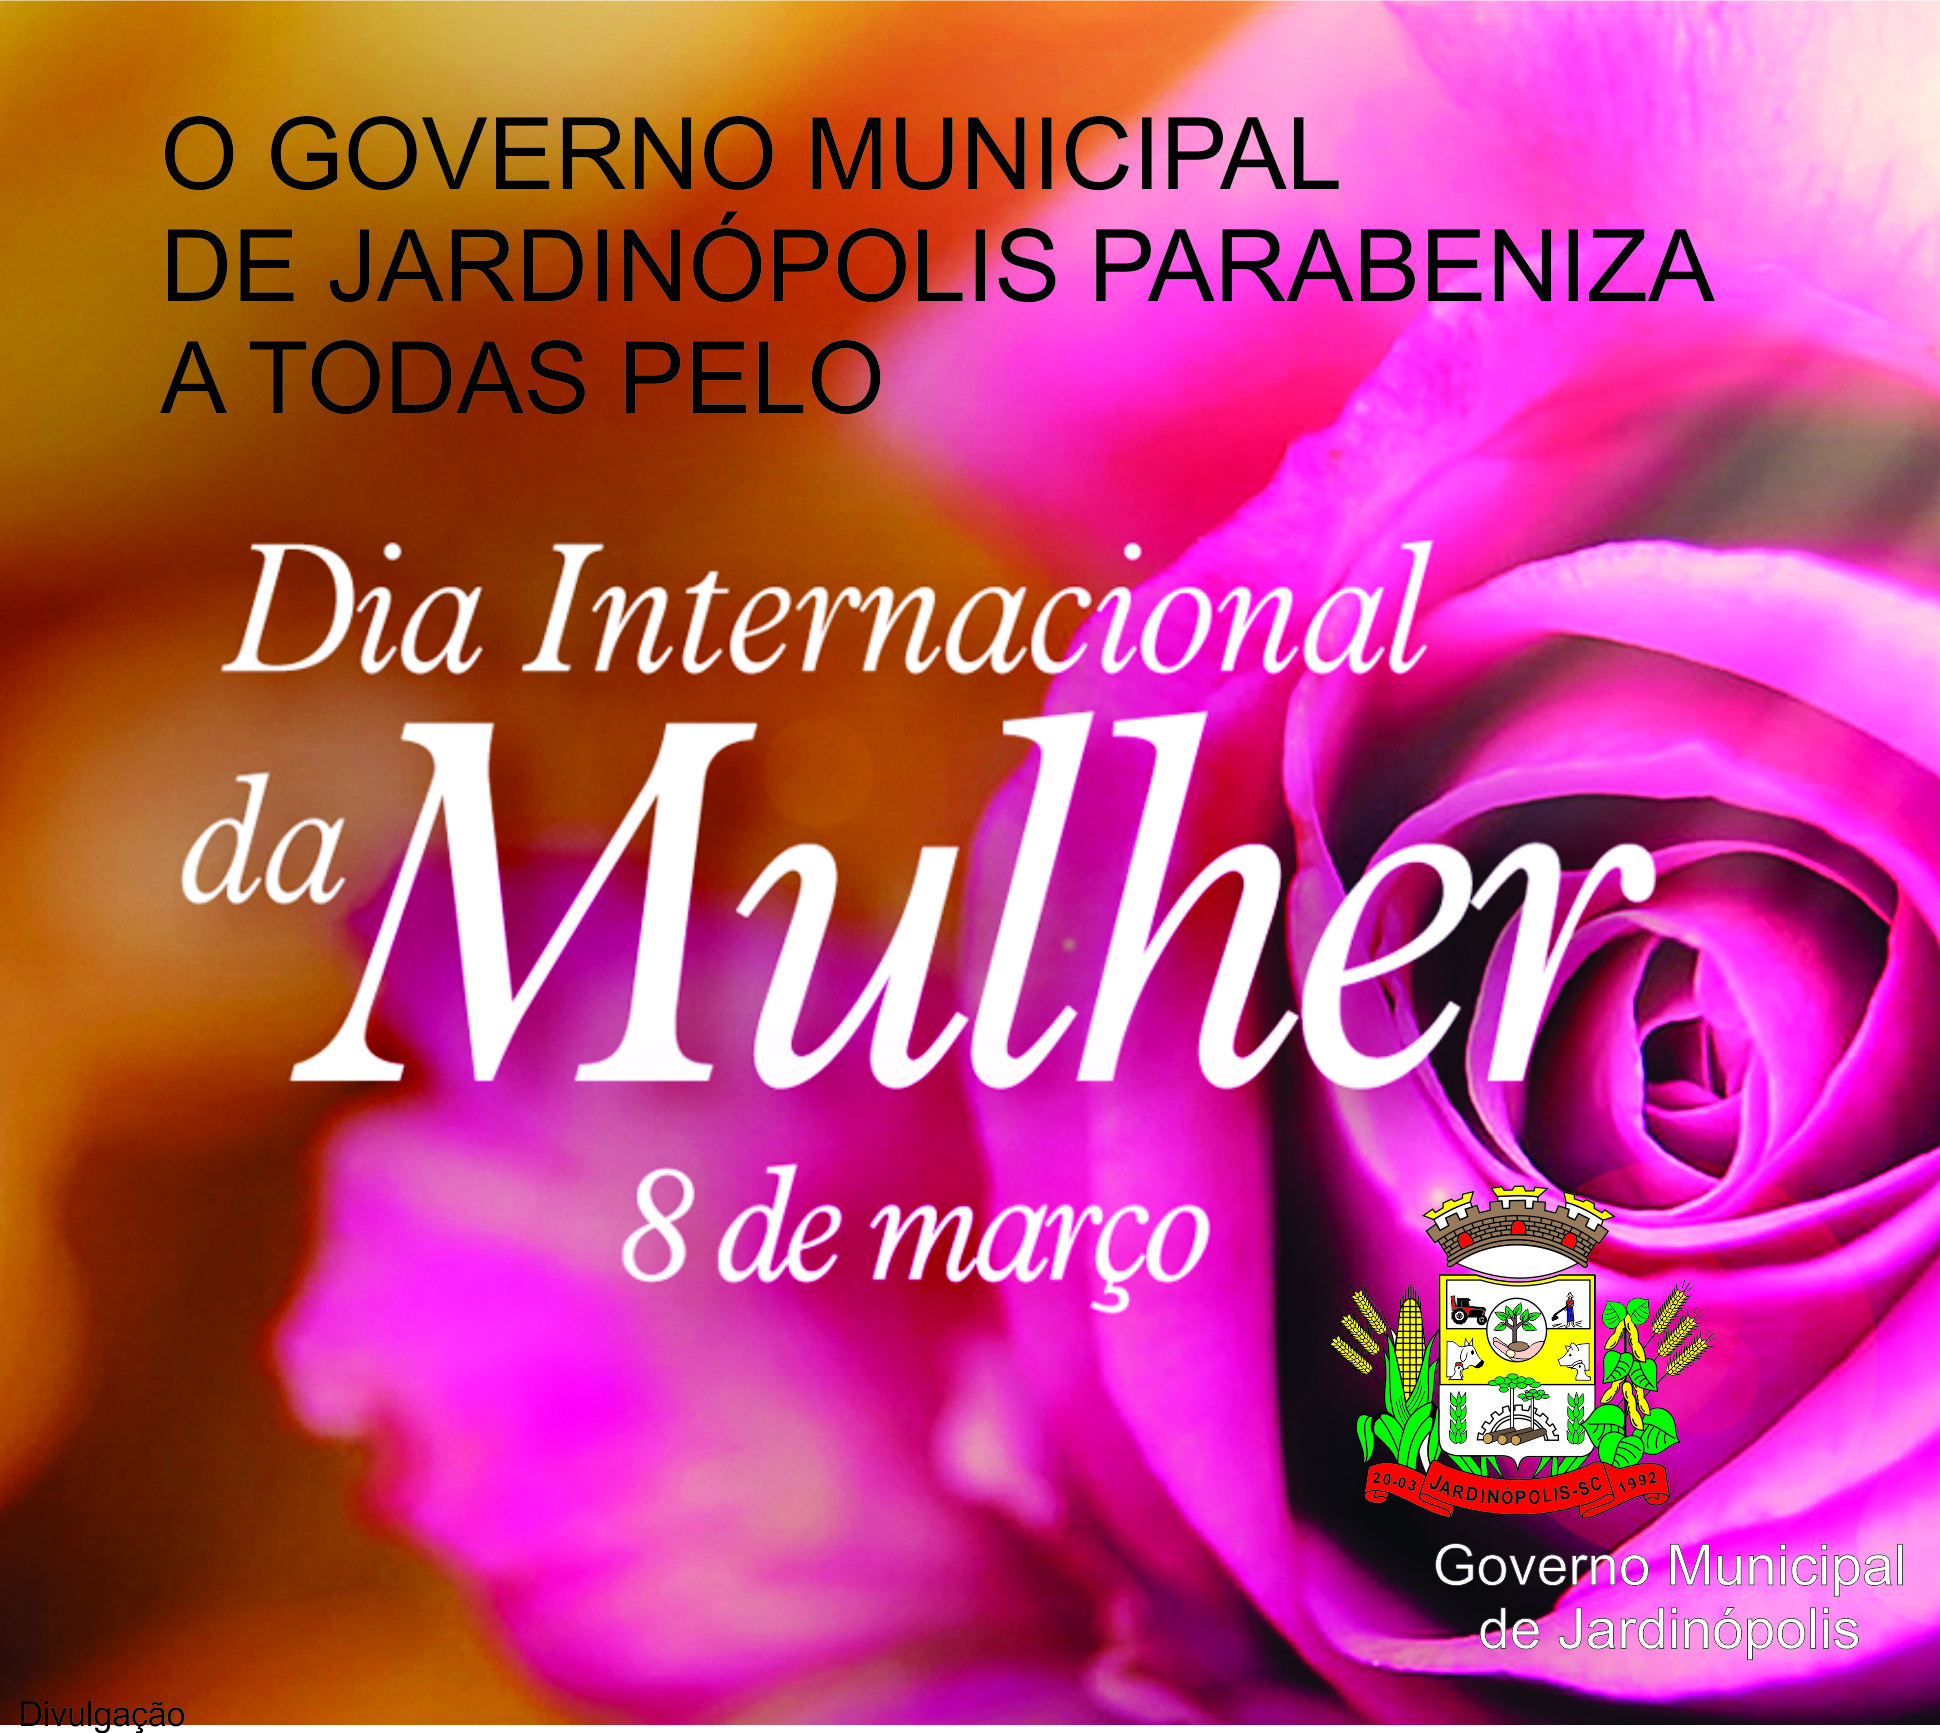 Desejamos a todas, um Feliz Dia da Mulher - MUNICÍPIO de Jardinópolis